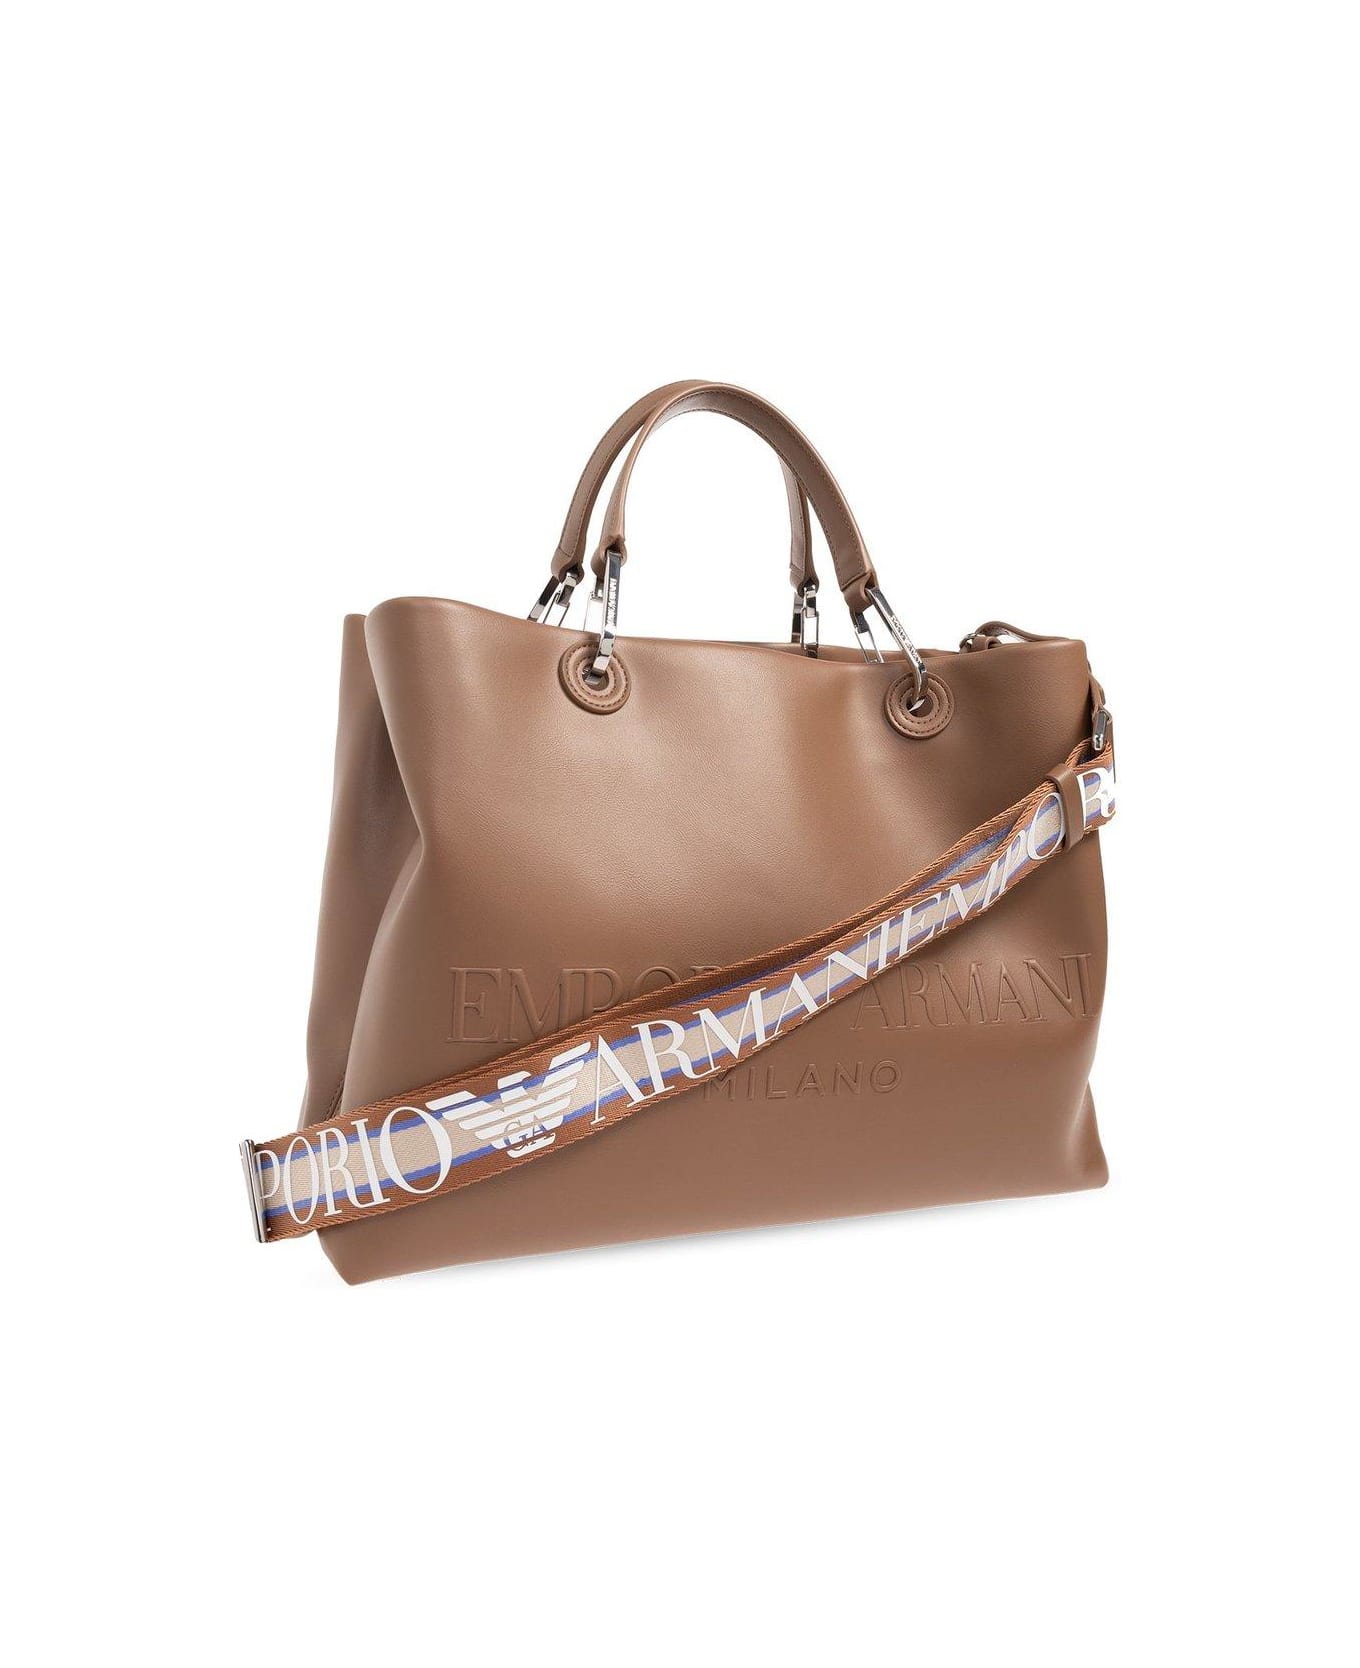 Emporio Armani Shopper Bag With Logo トートバッグ